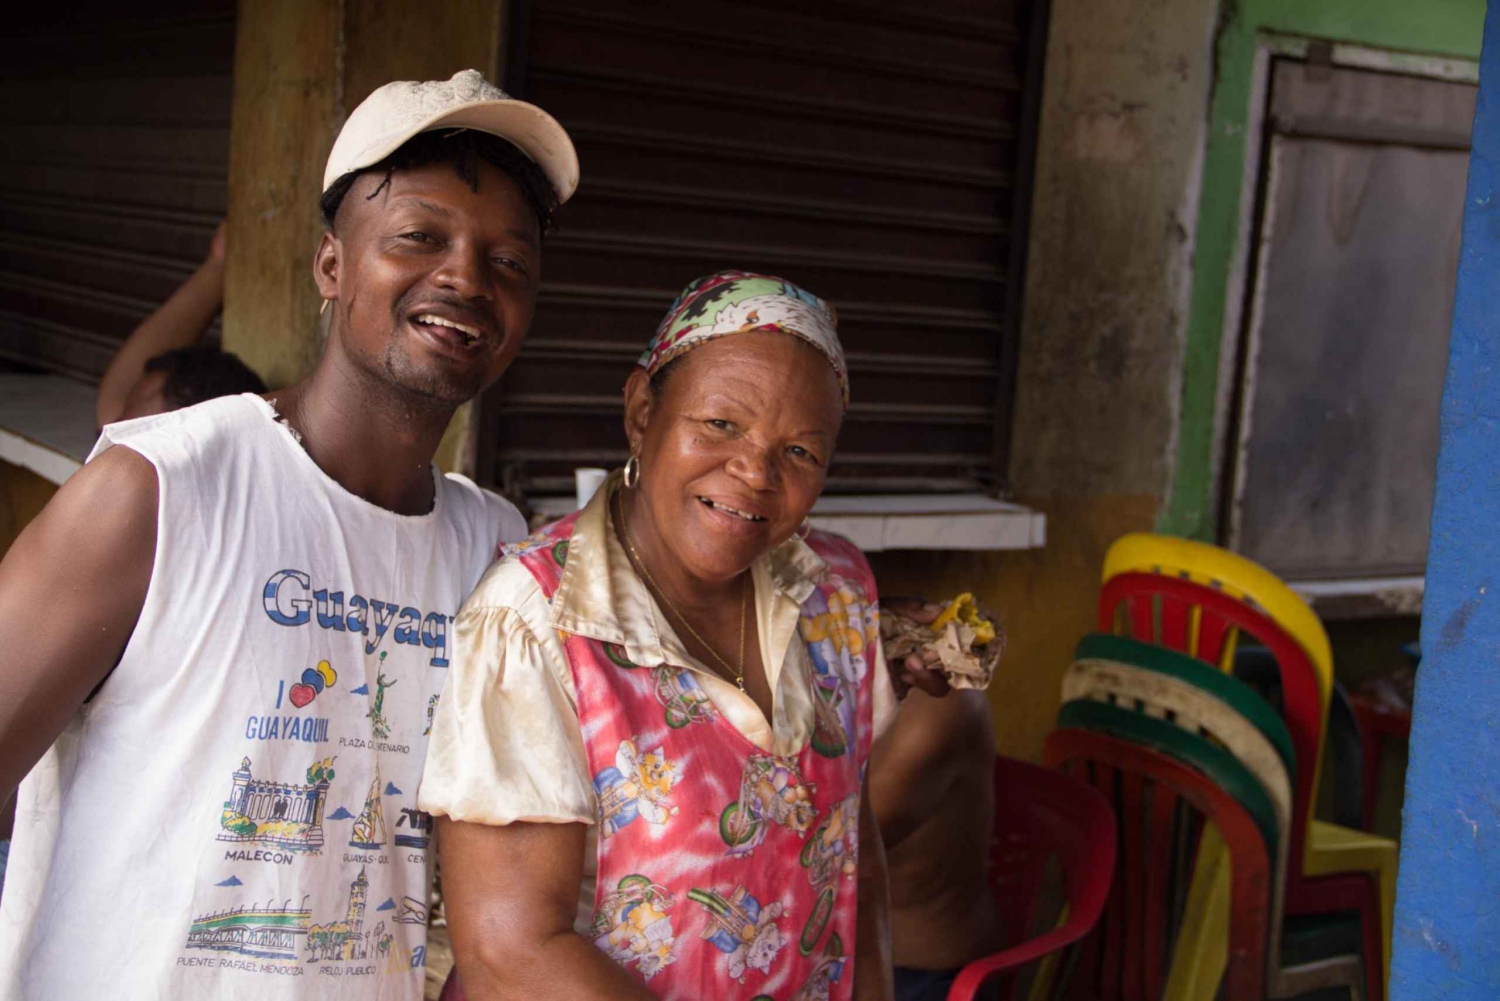 Cartagena: Visita de 3 horas al Mercado de Bazurto